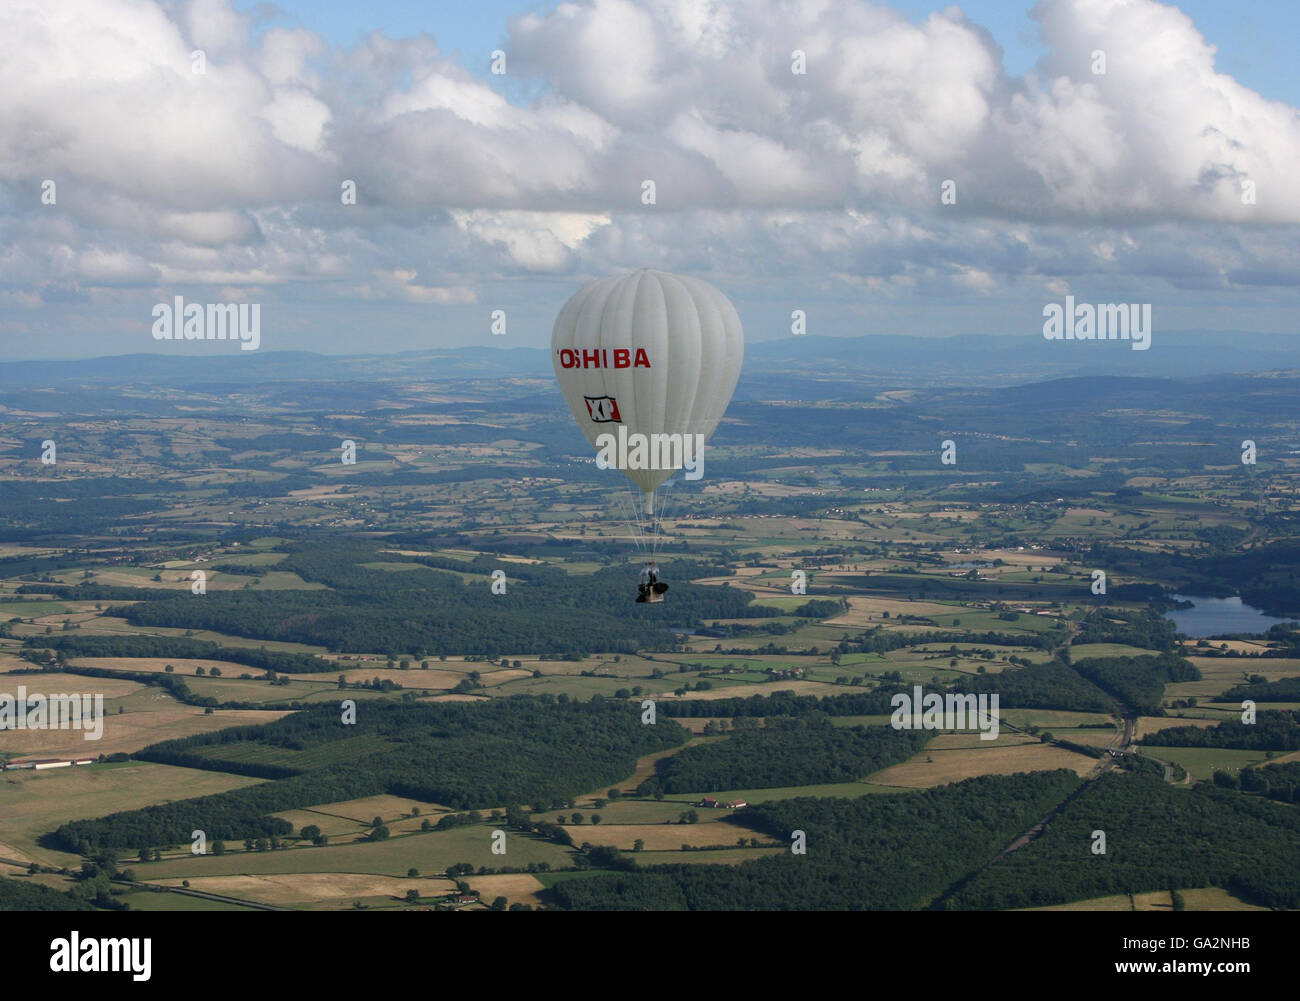 David Hempleman-Adams fliegt in seinem mit Helium gefüllten Gasballon durch das Burgund in Frankreich, nachdem er den Weltrekord beim Fliegen des kleinsten mit Helium gefüllten Gasballons der Welt über den Atlantik gebrochen hat. Stockfoto